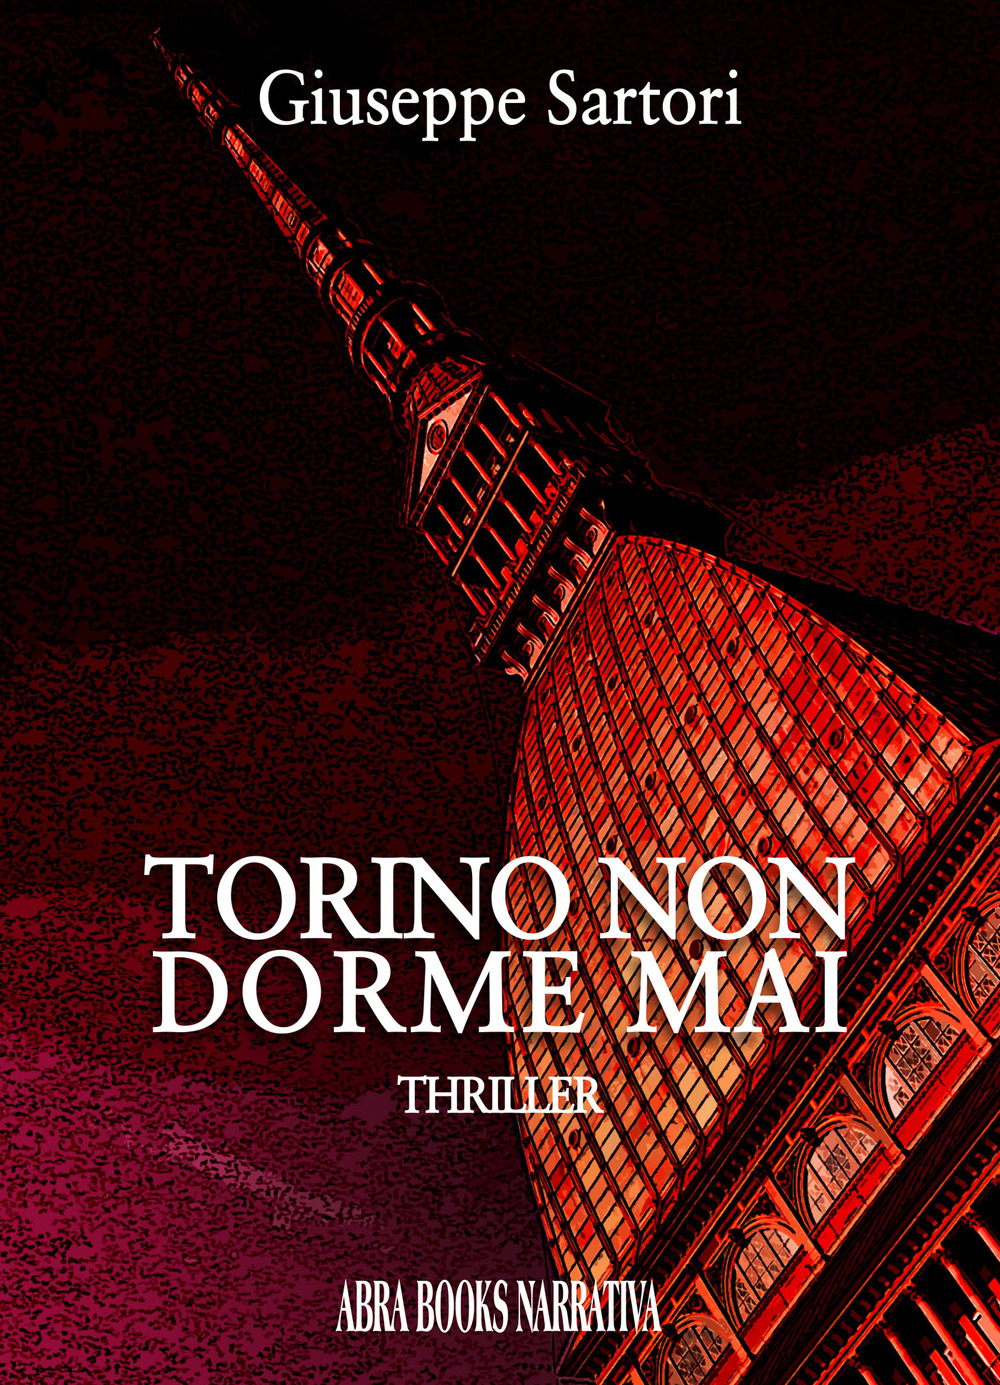 Torino non dorme mai